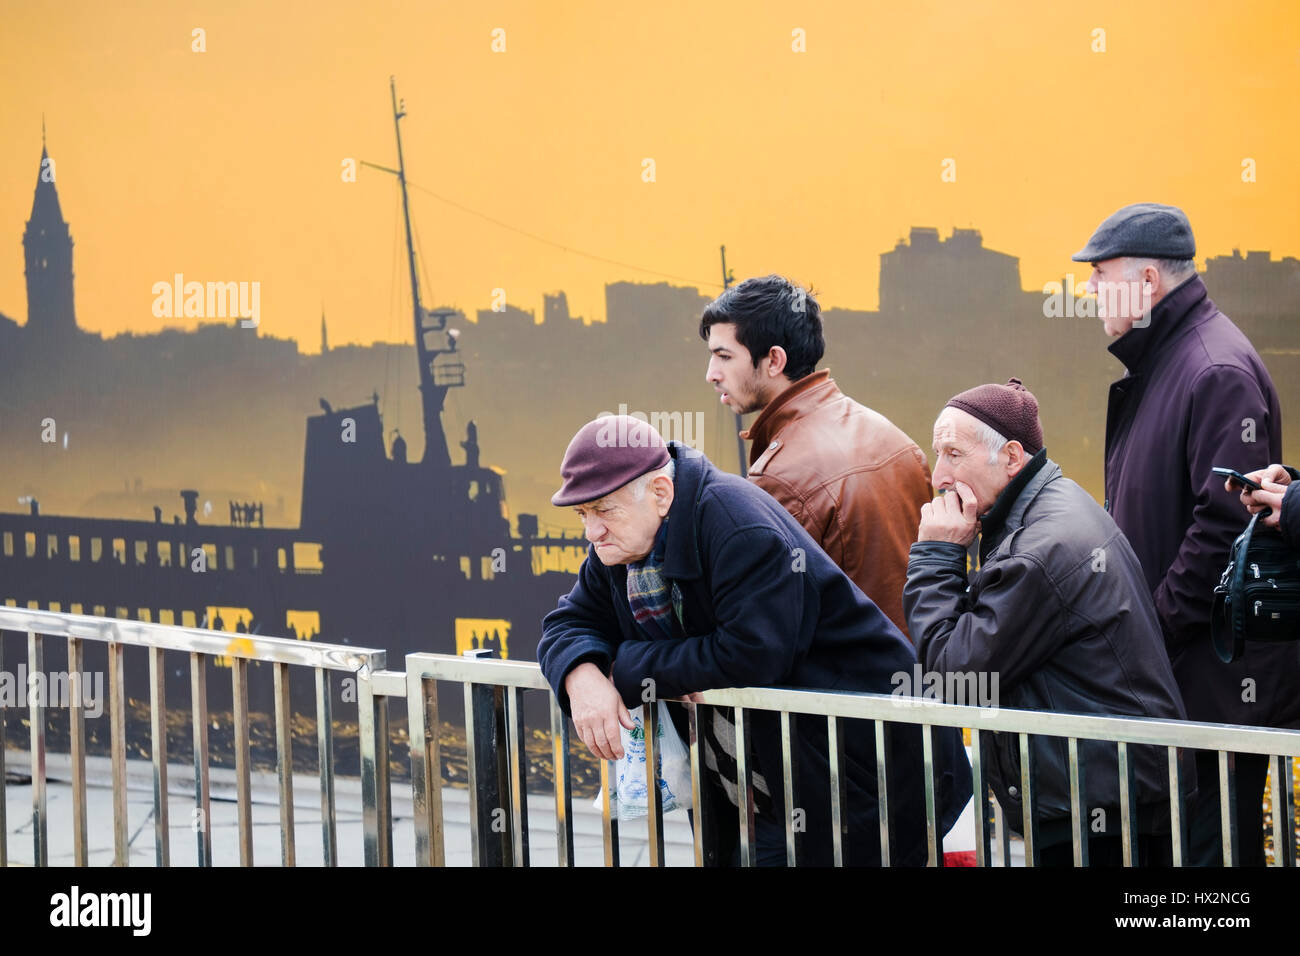 Istanbul, Türkei - 19 Februar 2017: Alte und Junge türkische Männer wartet auf Schiff vor ein interessantes Plakat an der Istanbul, Türkei Stockfoto